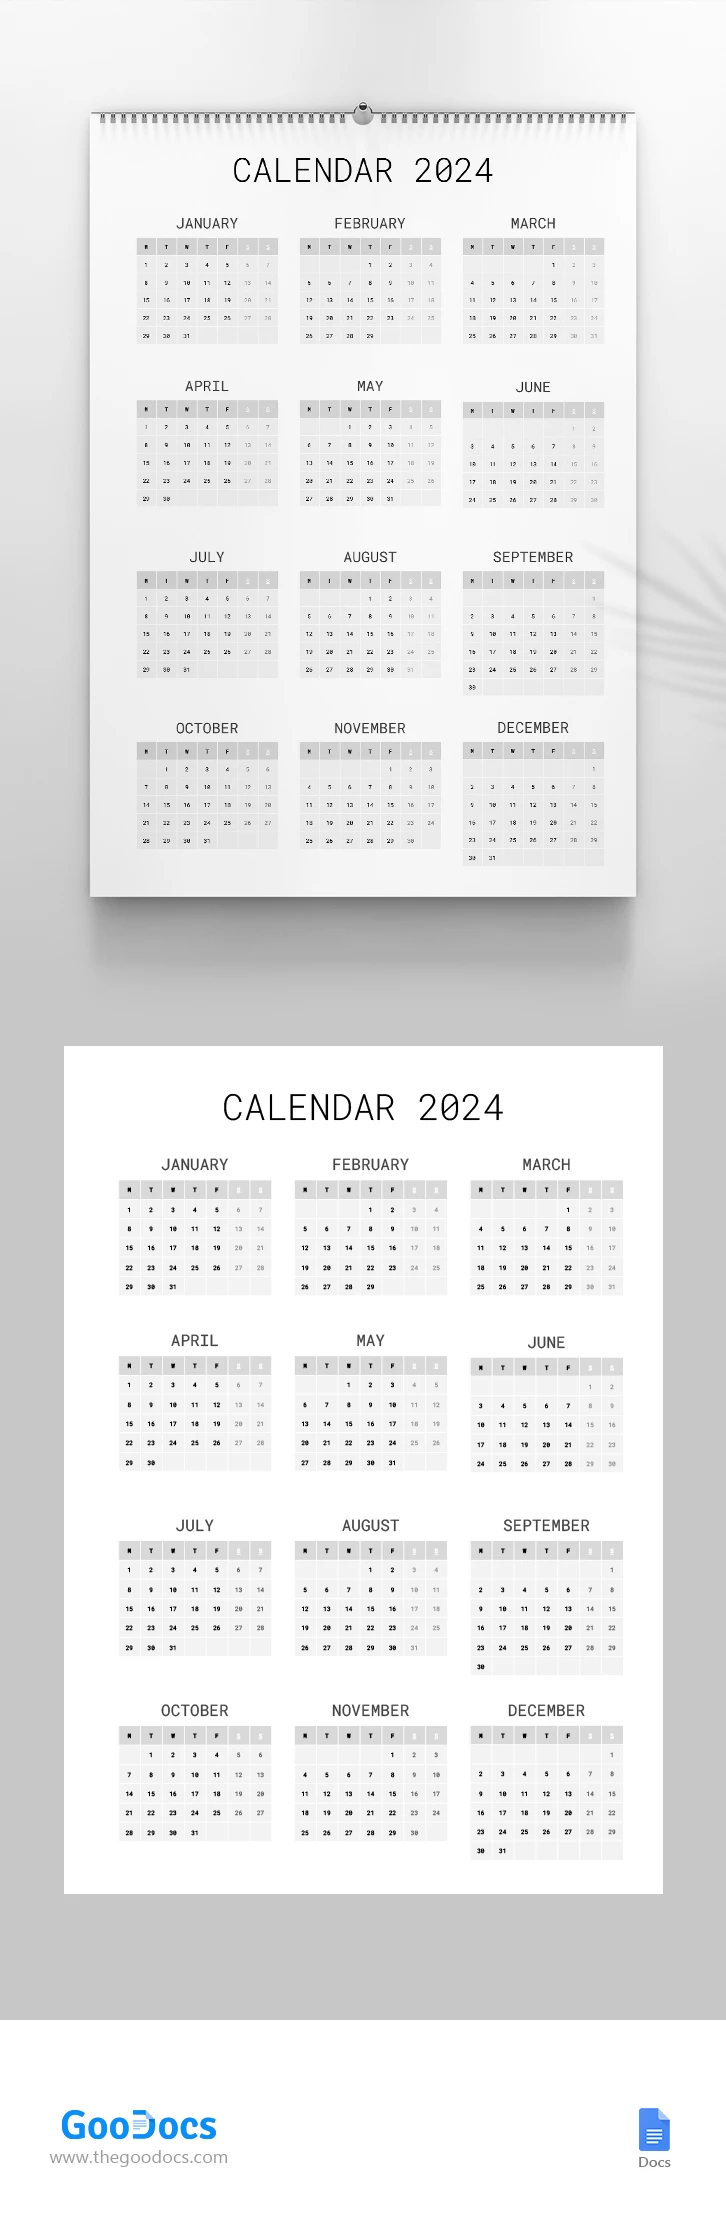 Calendário Anual 2024 - free Google Docs Template - 10068199